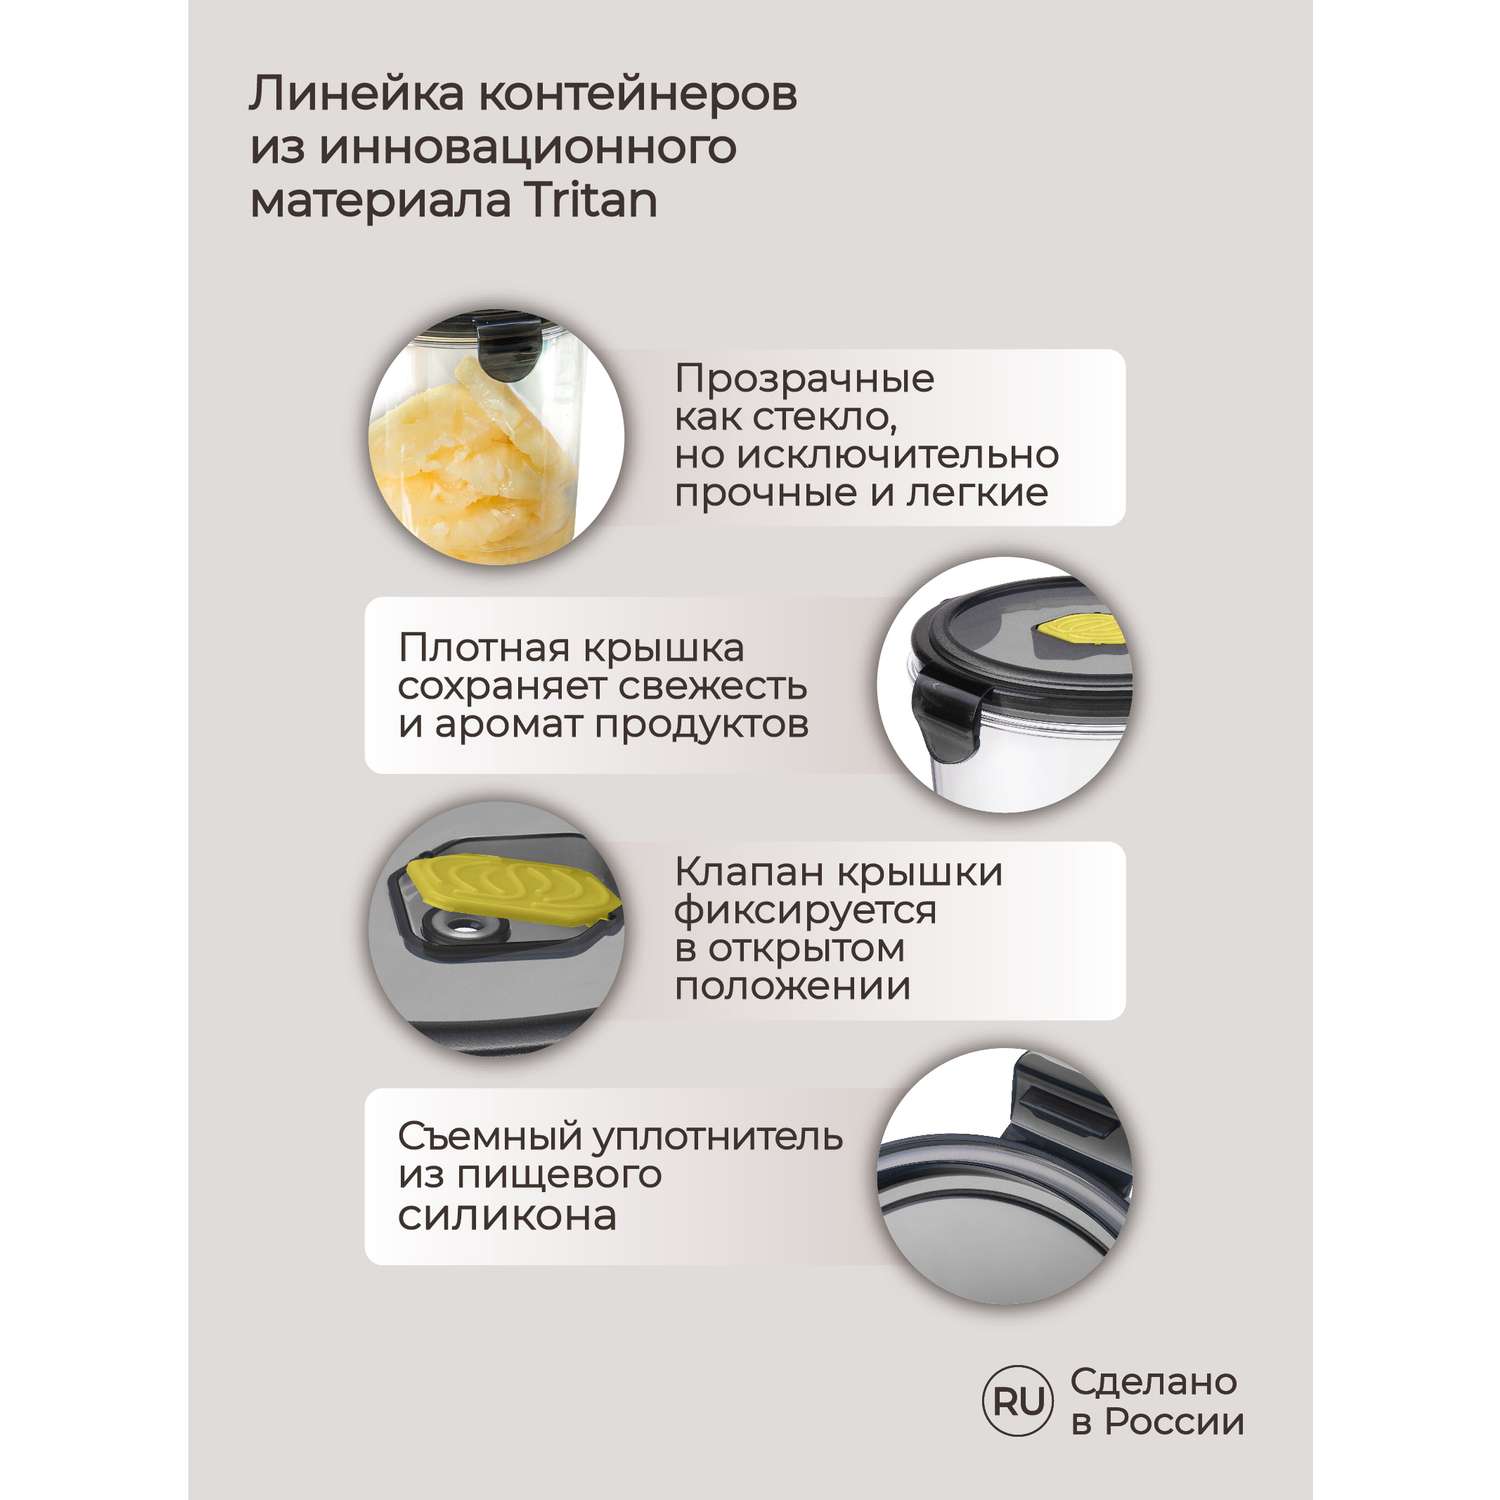 Контейнер Phibo для продуктов герметичный с клапаном Brilliant круглый 1.15л черный - фото 3